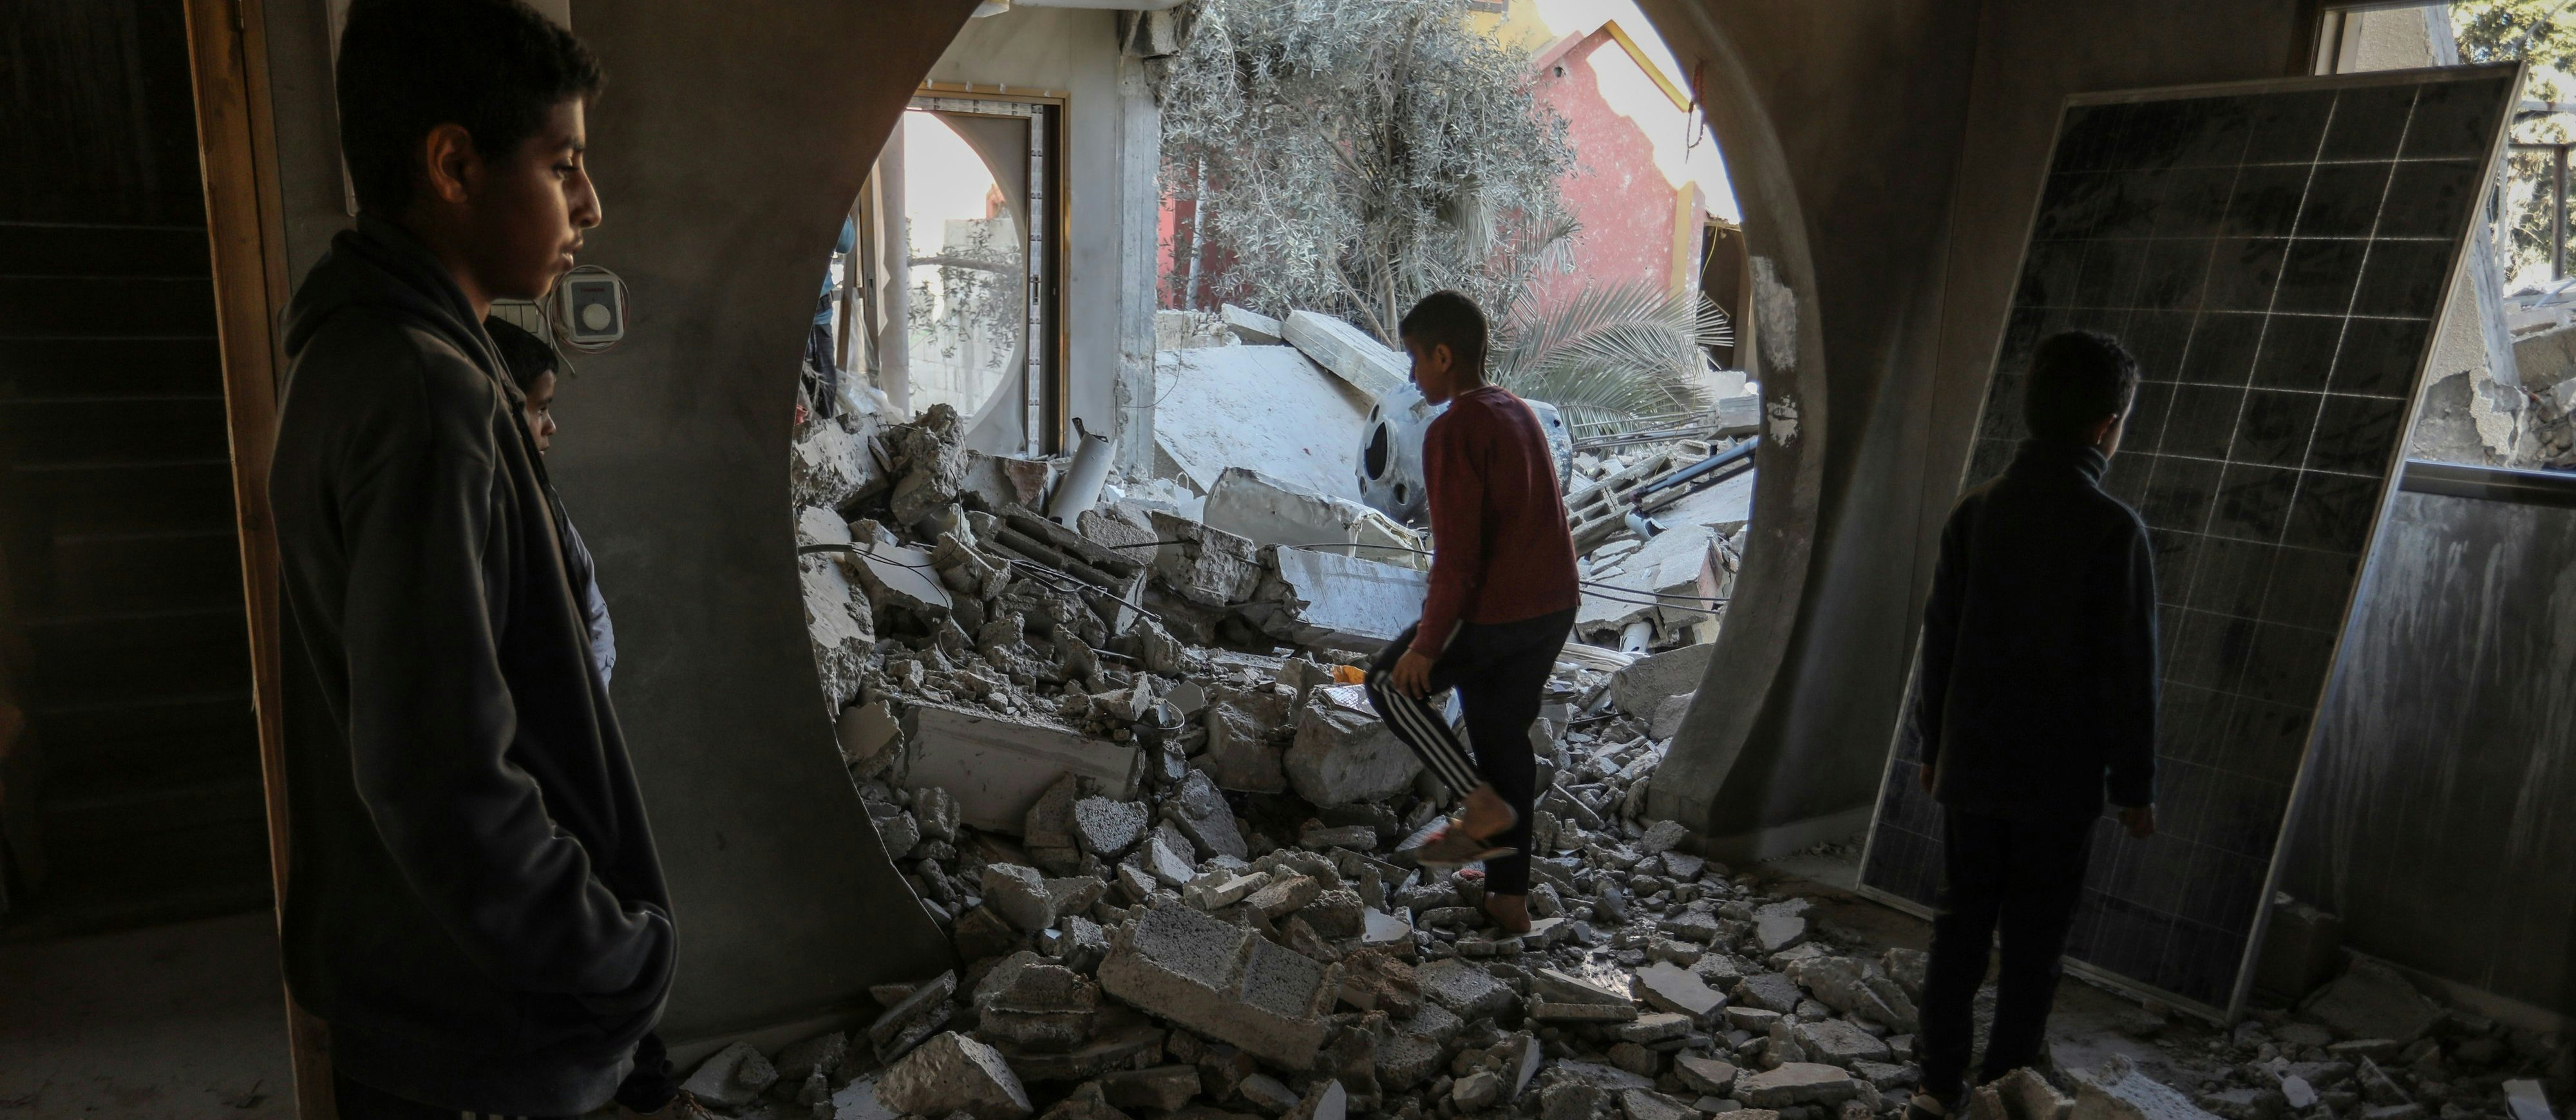 Welche Bilder, welche Geschichten transportieren? Ein zerstörtes Haus im Gazastreifen nach einem Raketenangriff Israel